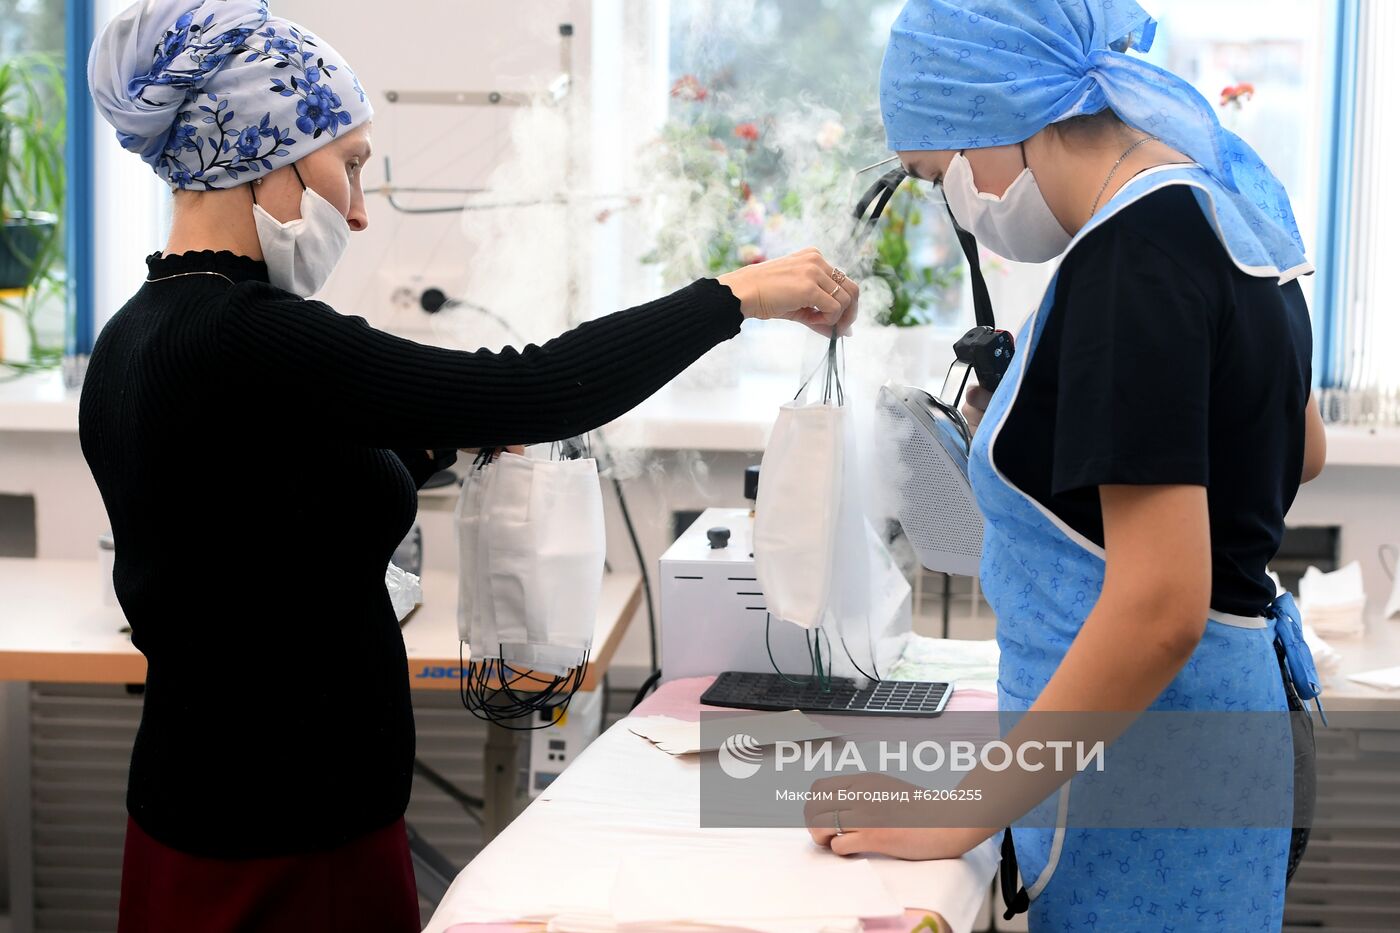 В аграрном колледже Татарстана начали шить защитные маски